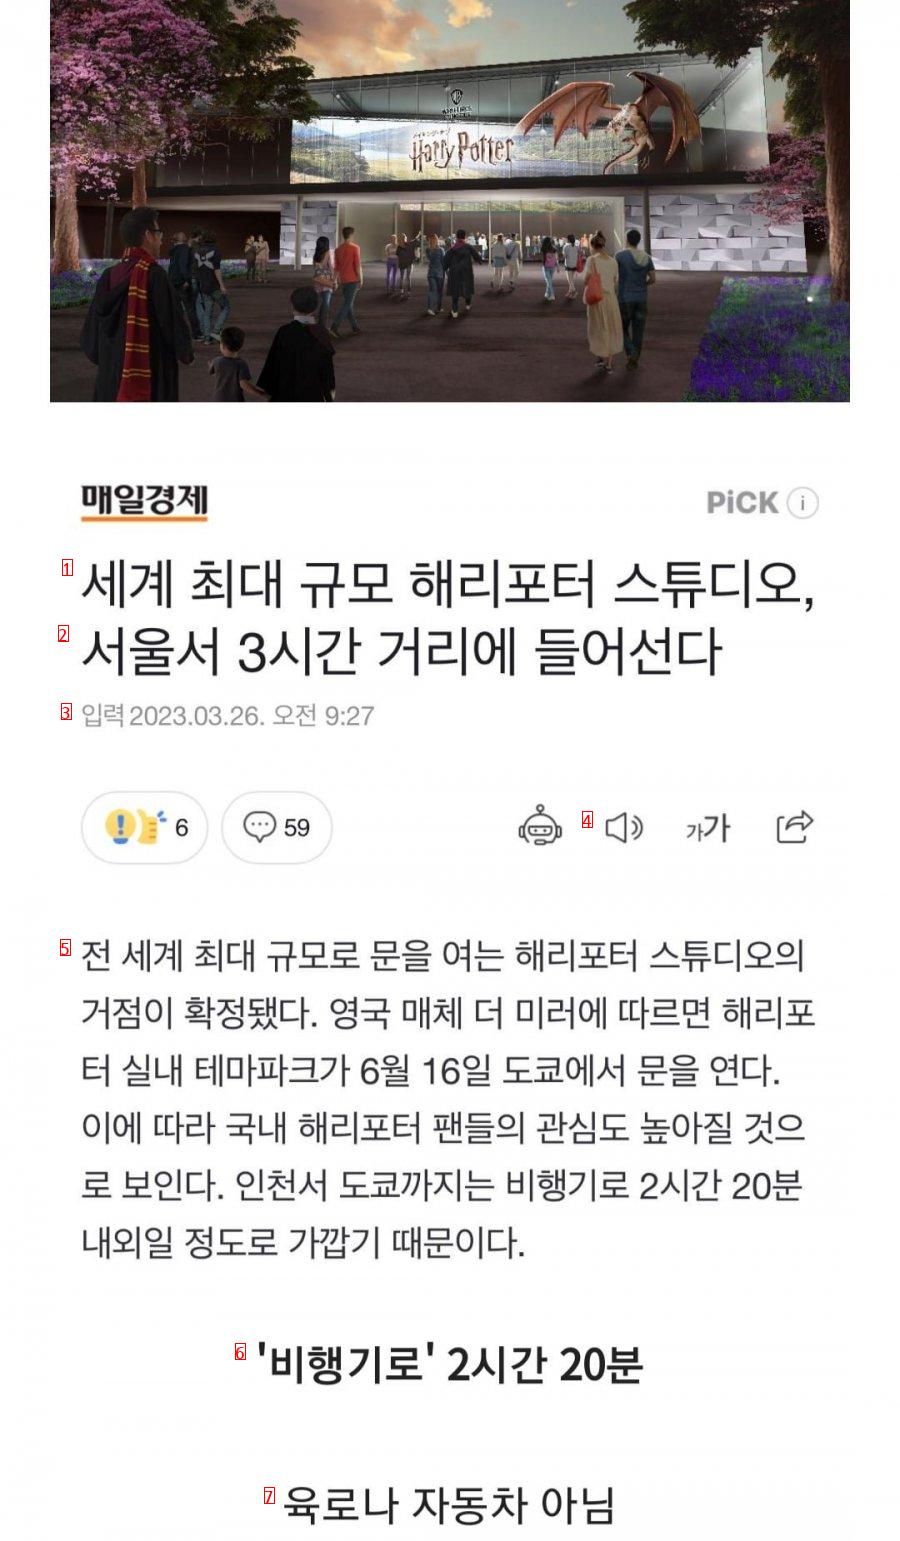 서울 3시간 거리 """"해리포터 스튜디오"""" 확정